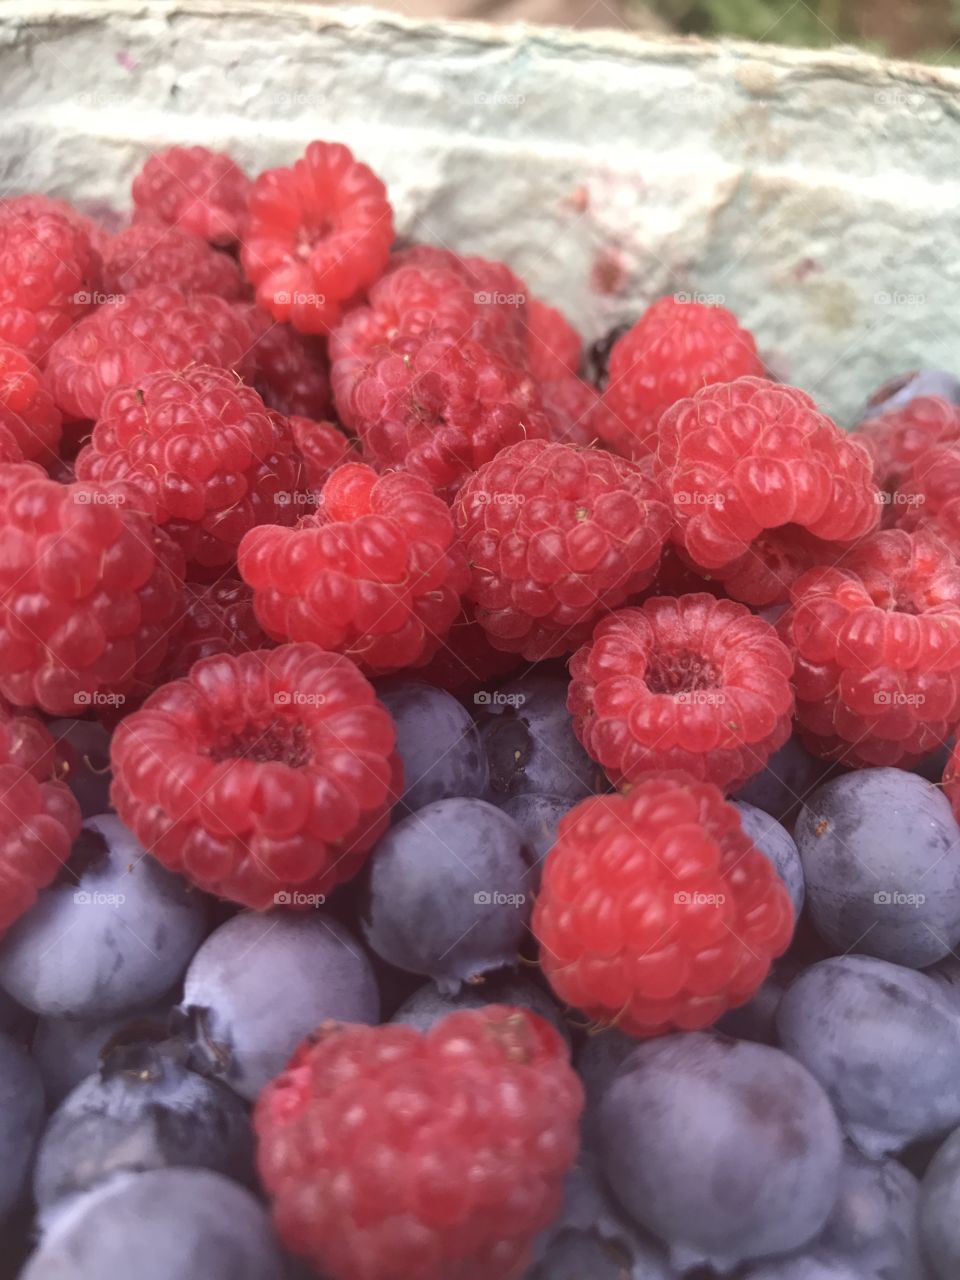 Berry harvest 